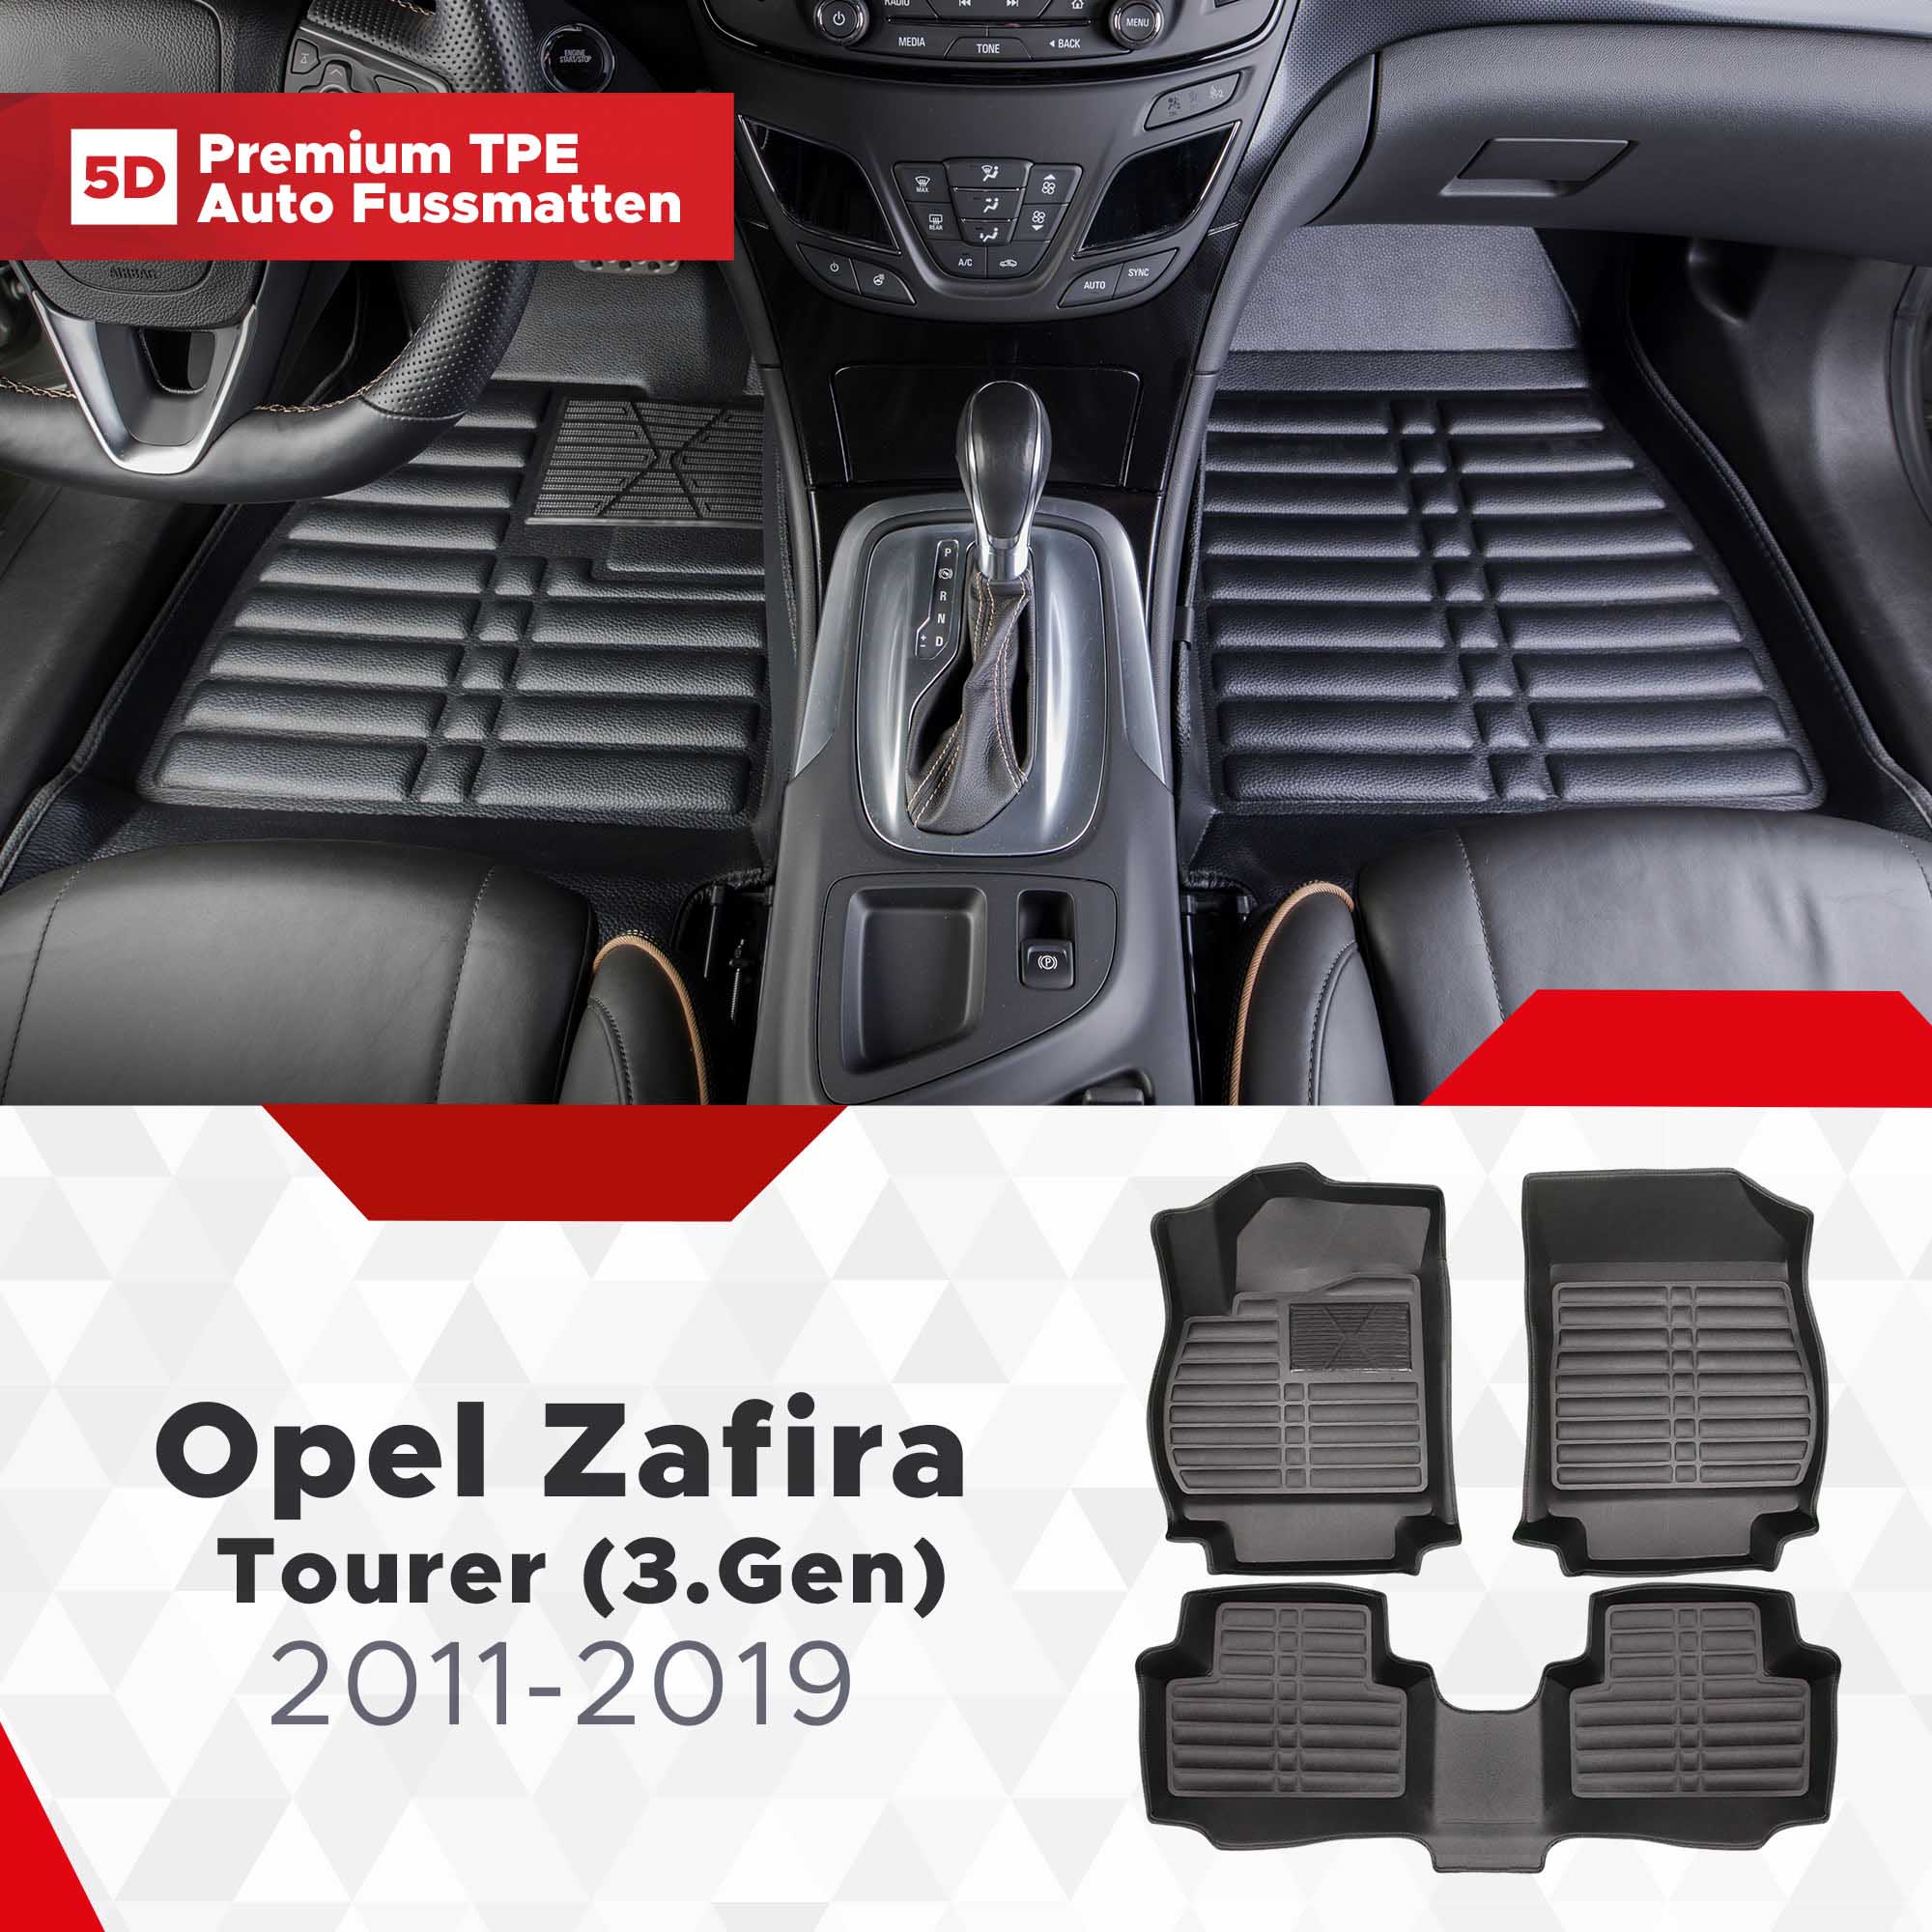 5D Opel Zafira Tourer (3.Gen) Fussmatten Bj 2011-2019 TPE